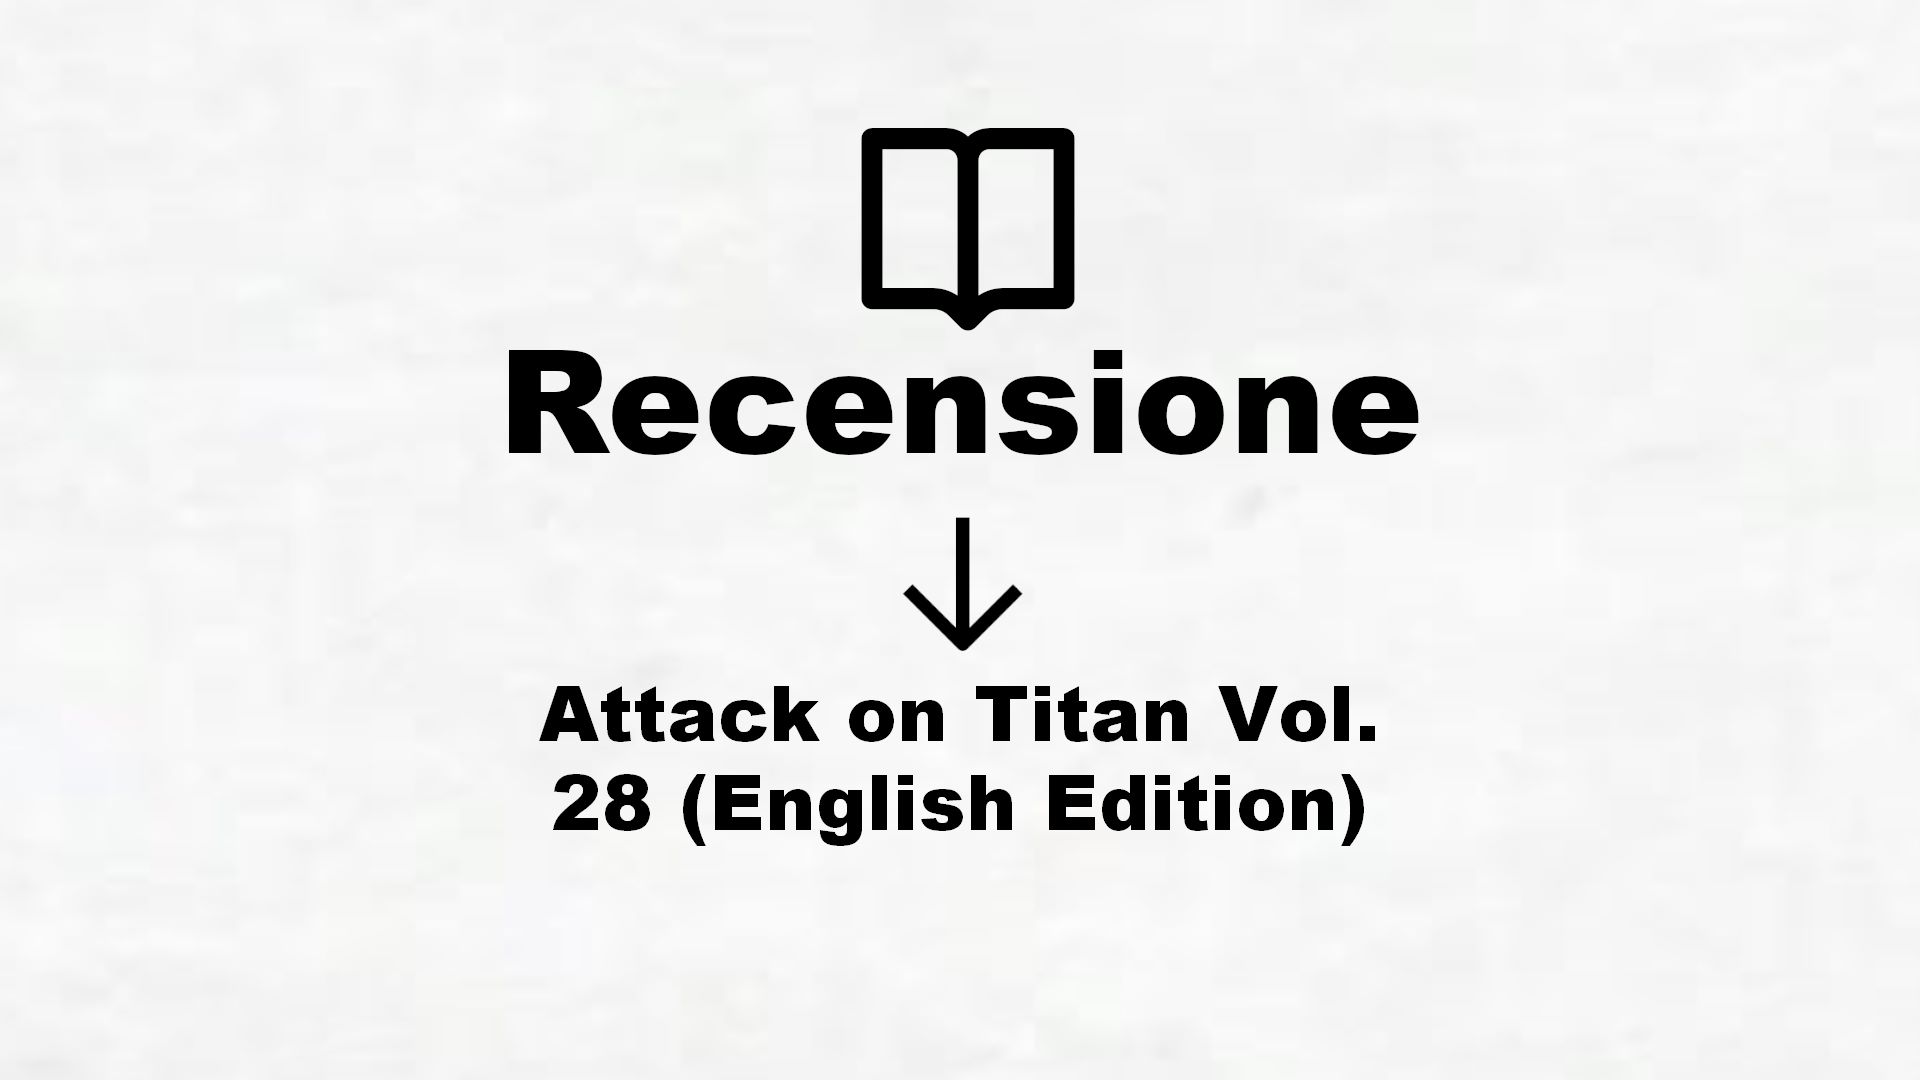 Attack on Titan Vol. 28 (English Edition) – Recensione Libro